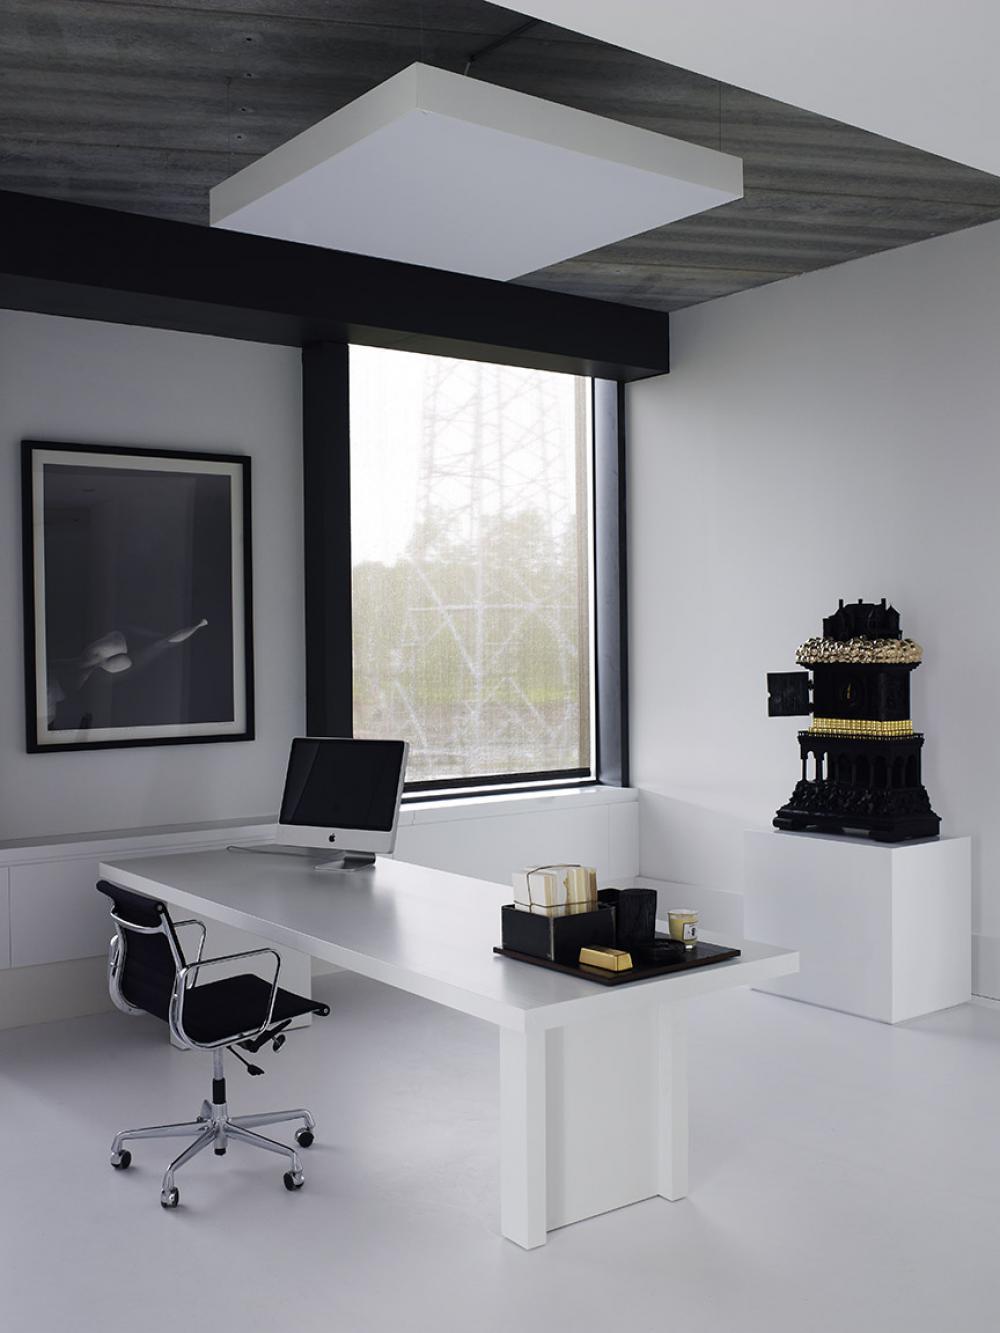 Studio Piet Boon Headquarters Oostzaan